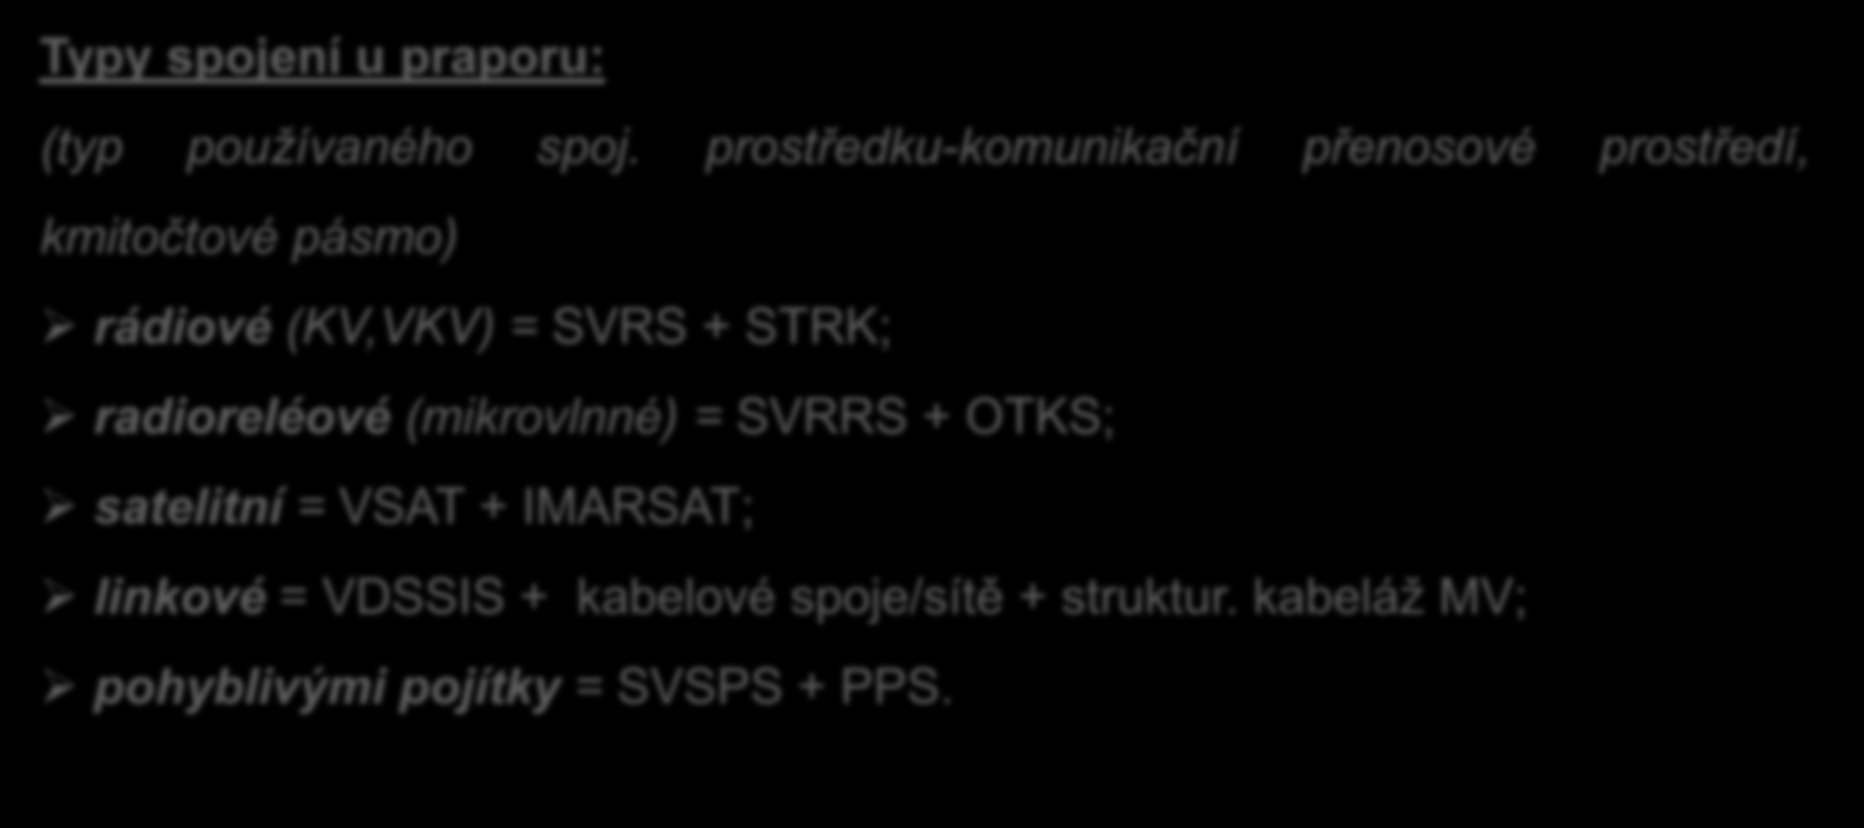 + STRK; radioreléové (mikrovlnné) = SVRRS + OTKS; satelitní = VSAT + IMARSAT; linkové